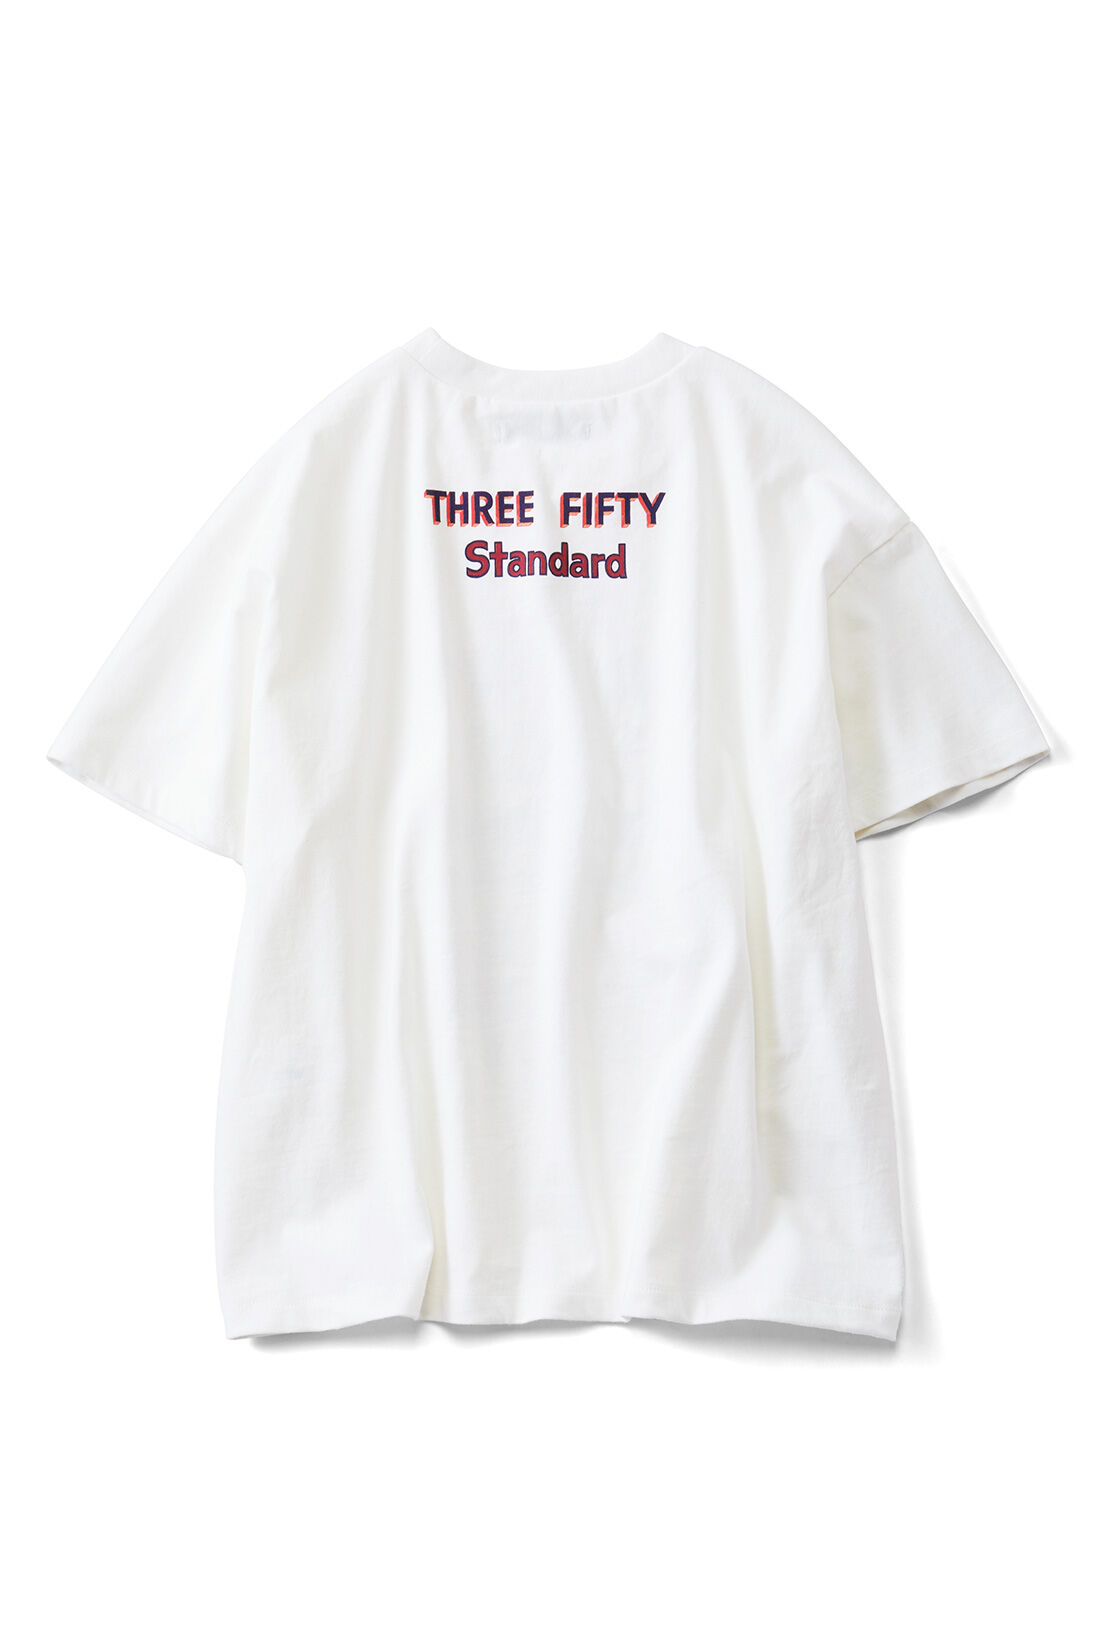 THREE FIFTY STANDARD|THREE FIFTY STANDARD ベーカリーショップTシャツ〈オフホワイト〉|BACK